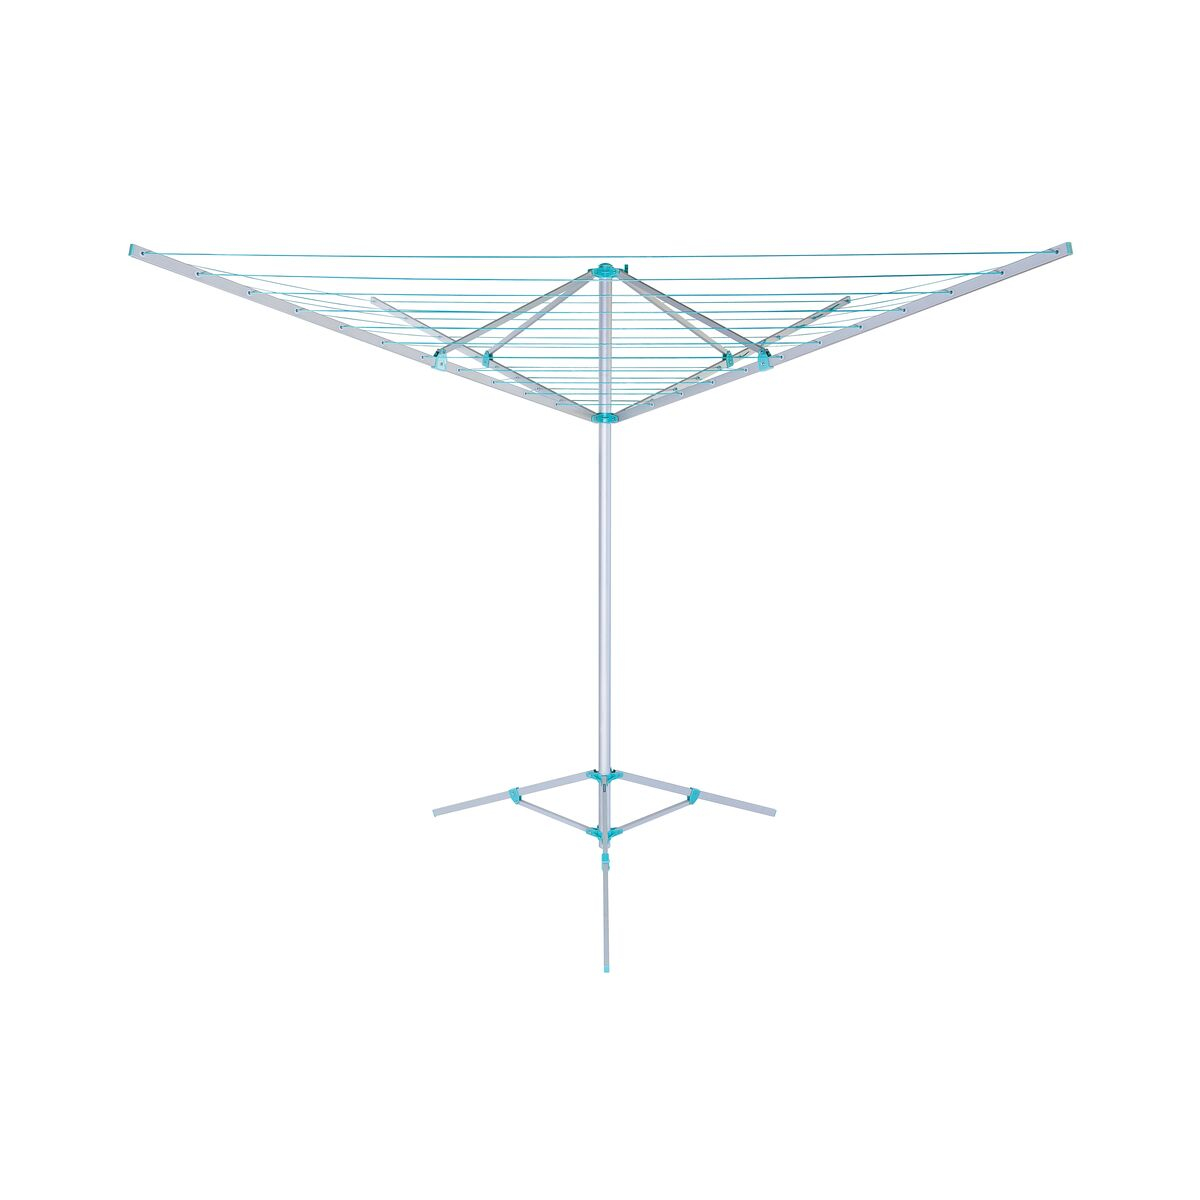 Varal Umbrella Tramontina de Alumínio com Cordas em Pvc Braços e Tripé Dobráveis e Capacidade de Secagem de 50m
